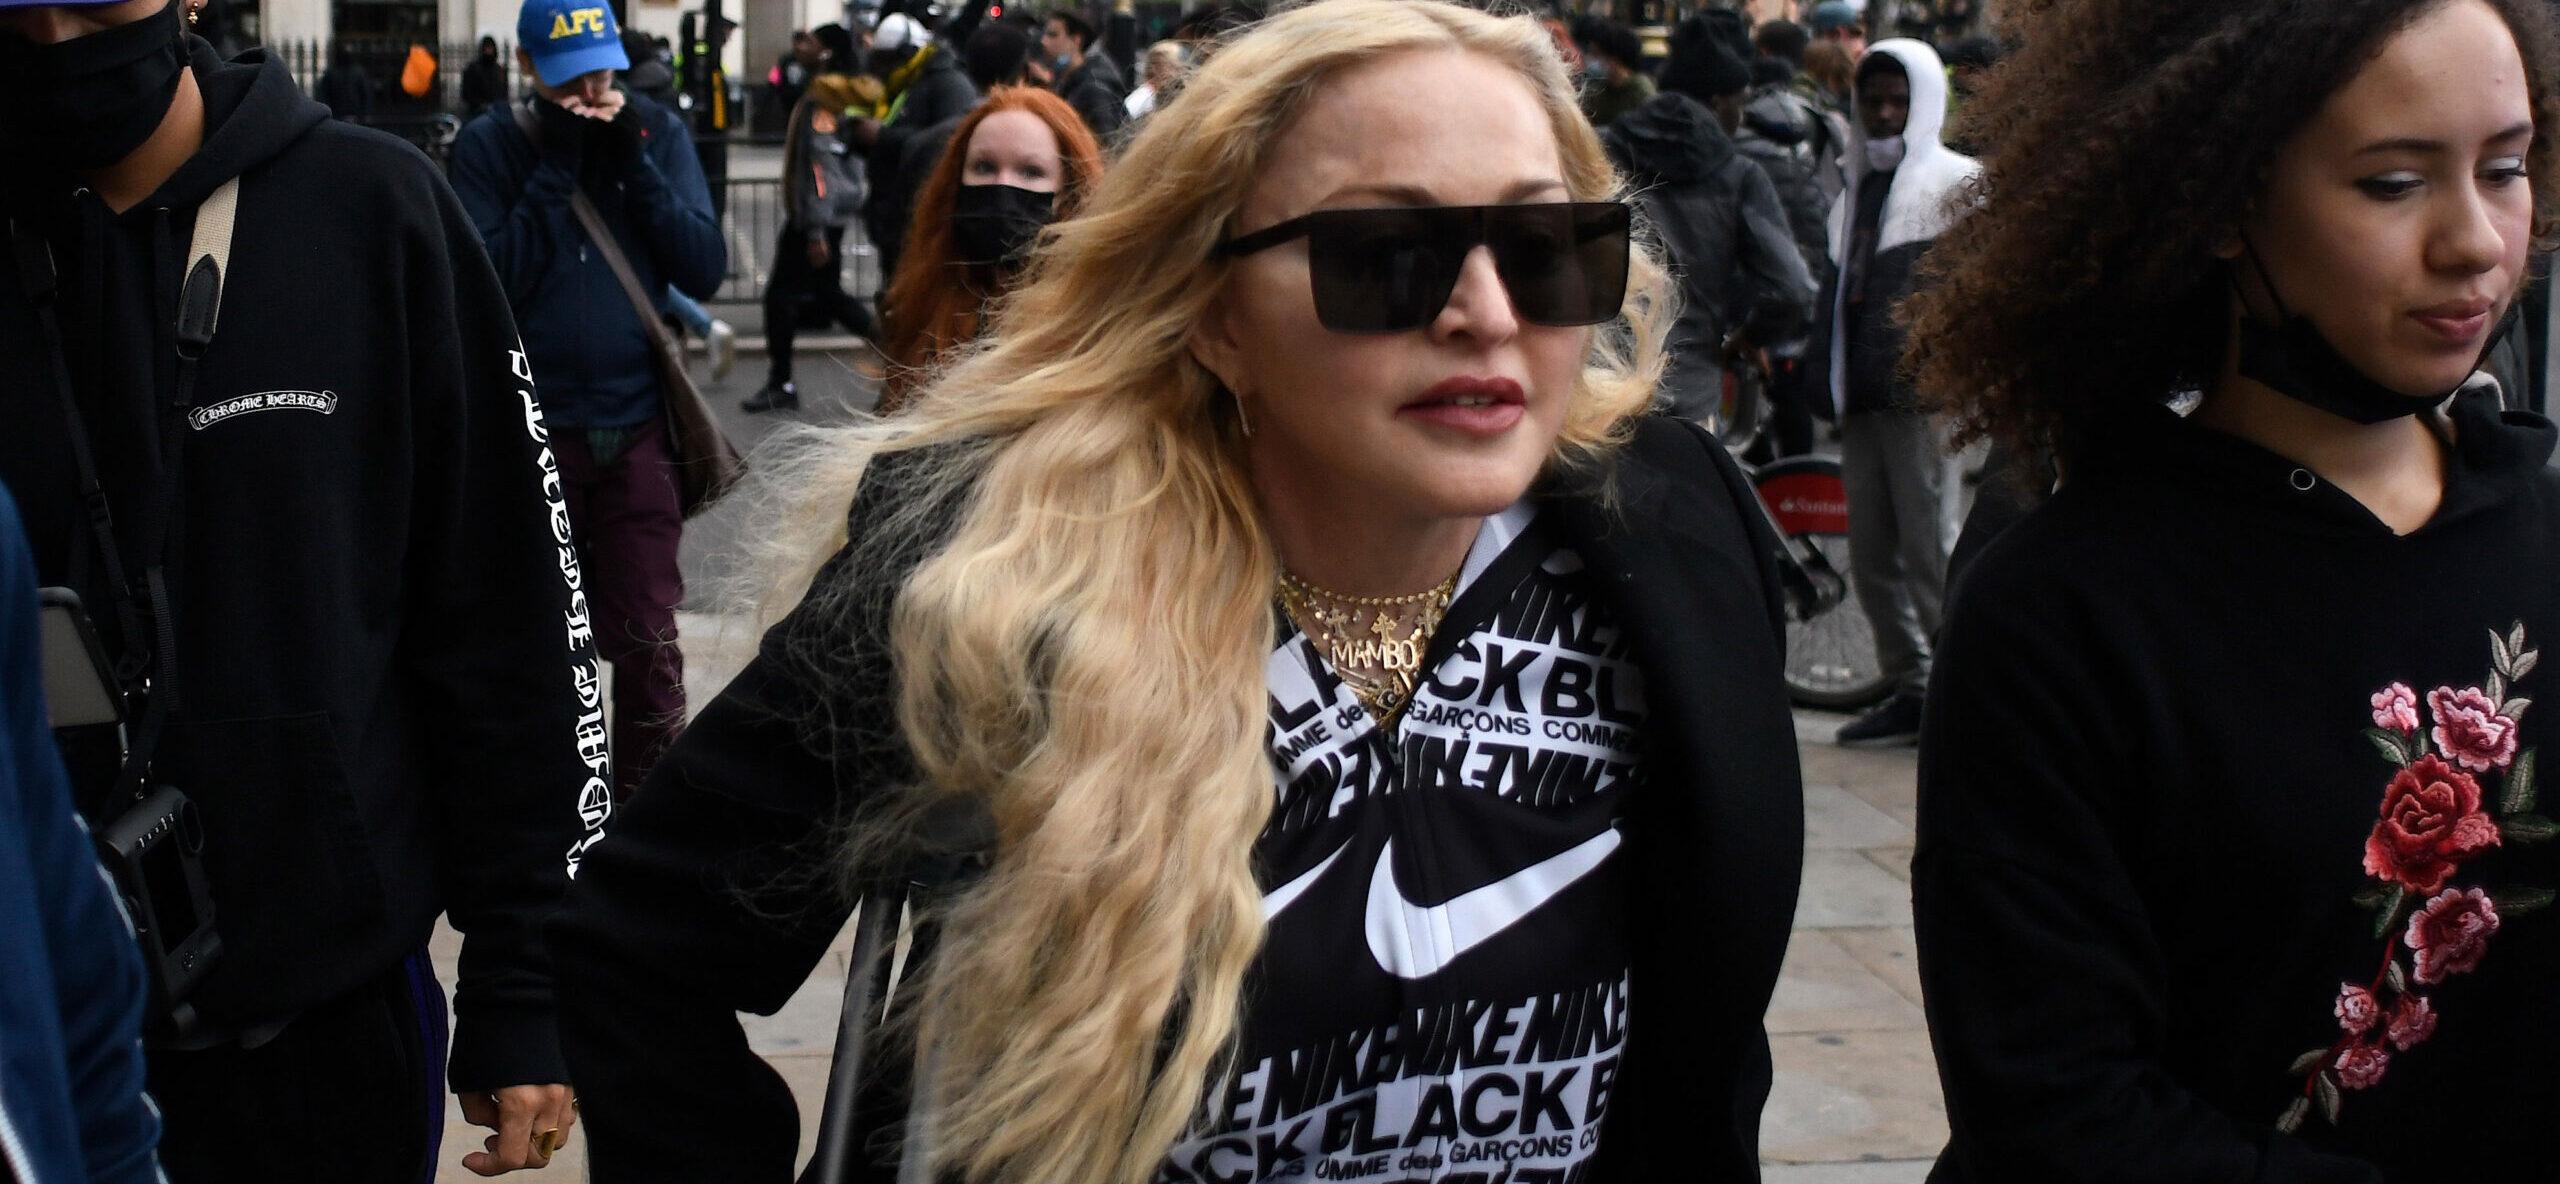 Madonna at Black Lives Matter protest in London